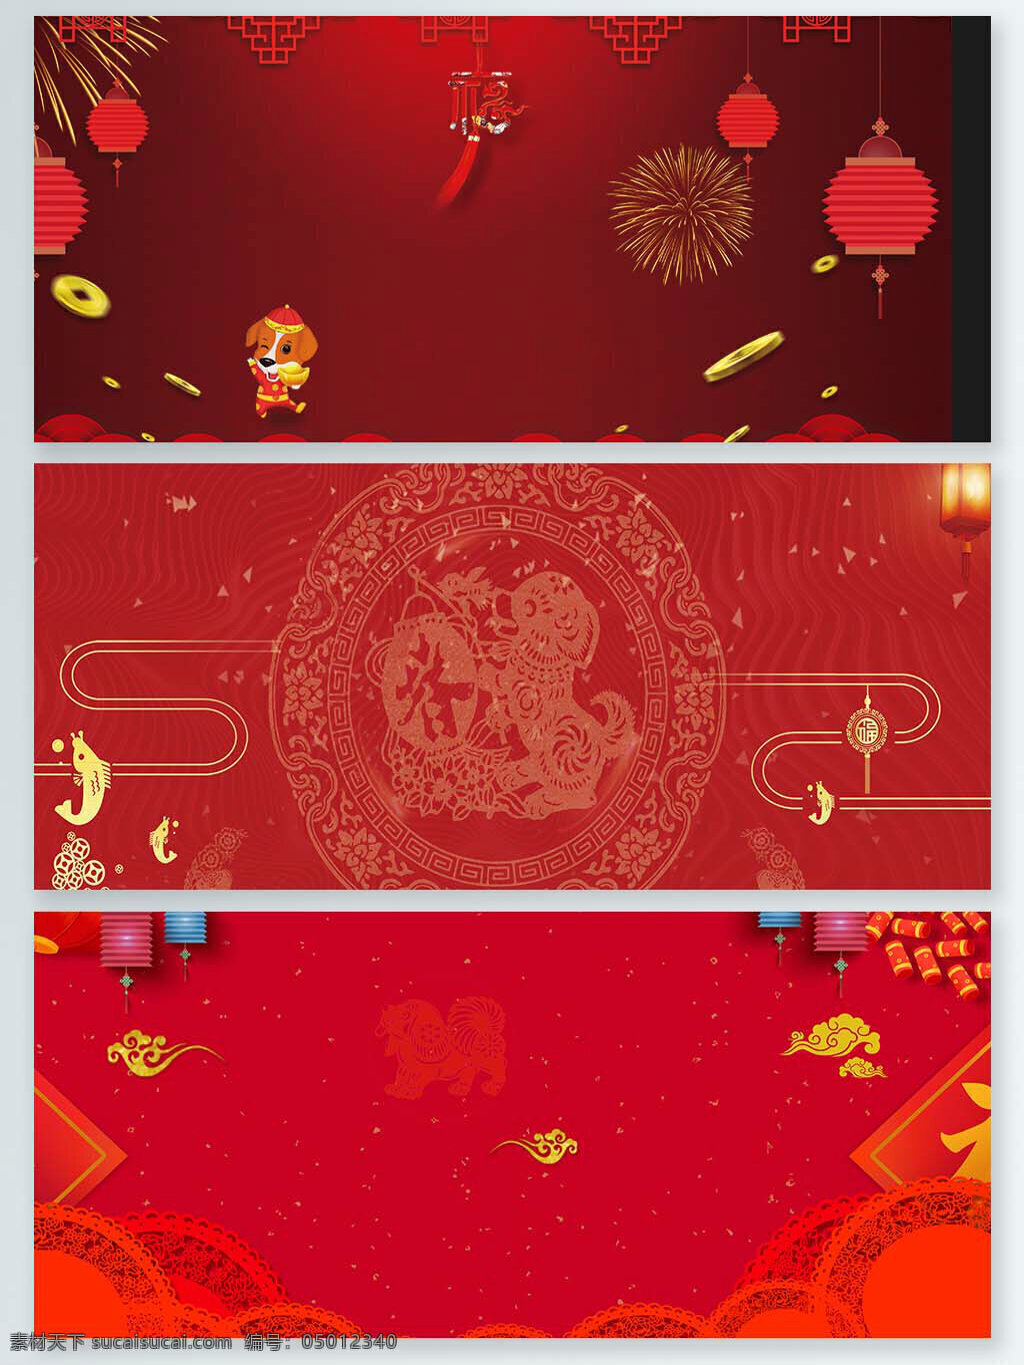 新春 喜庆 氛围 背景 图 背景图 春节 大气 红色 欢乐 新年 装饰